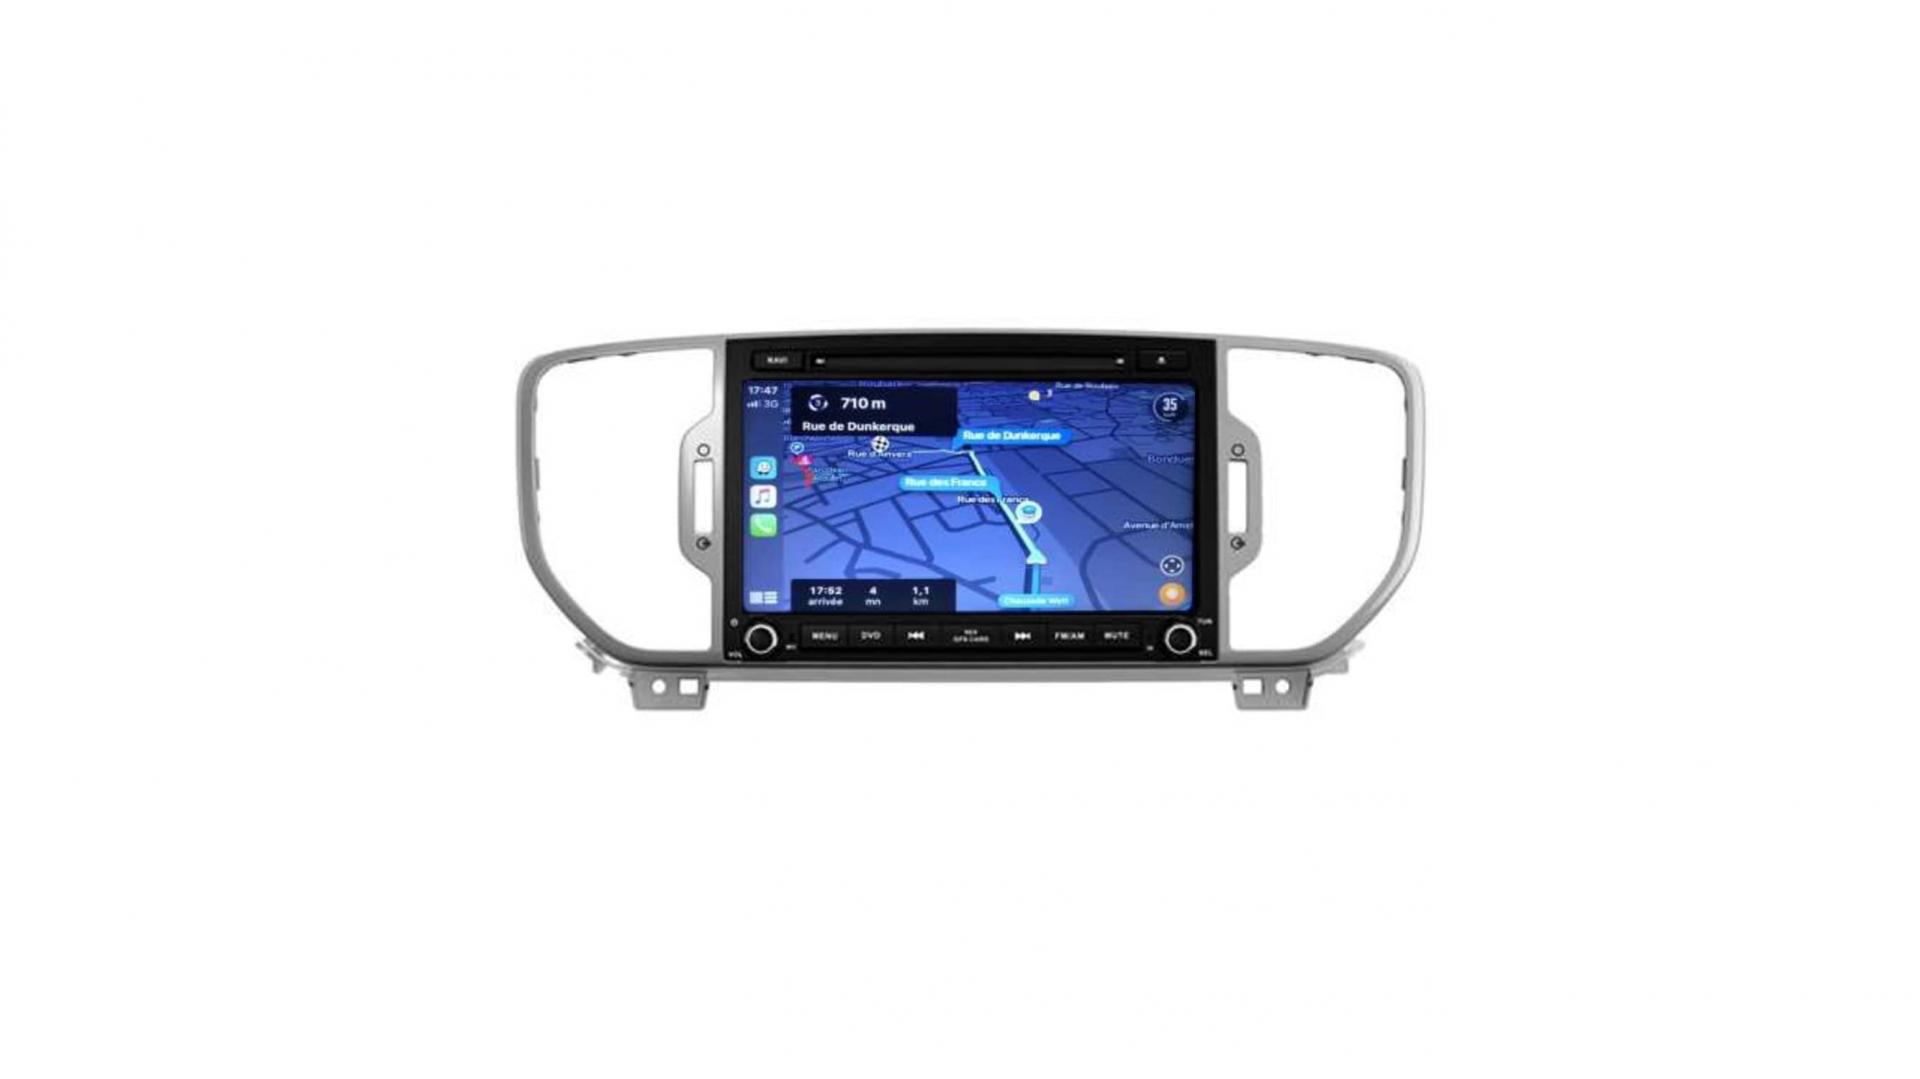 Autoradio androi d auto carplay gps bluetooth kia sportage depuis 2016 3